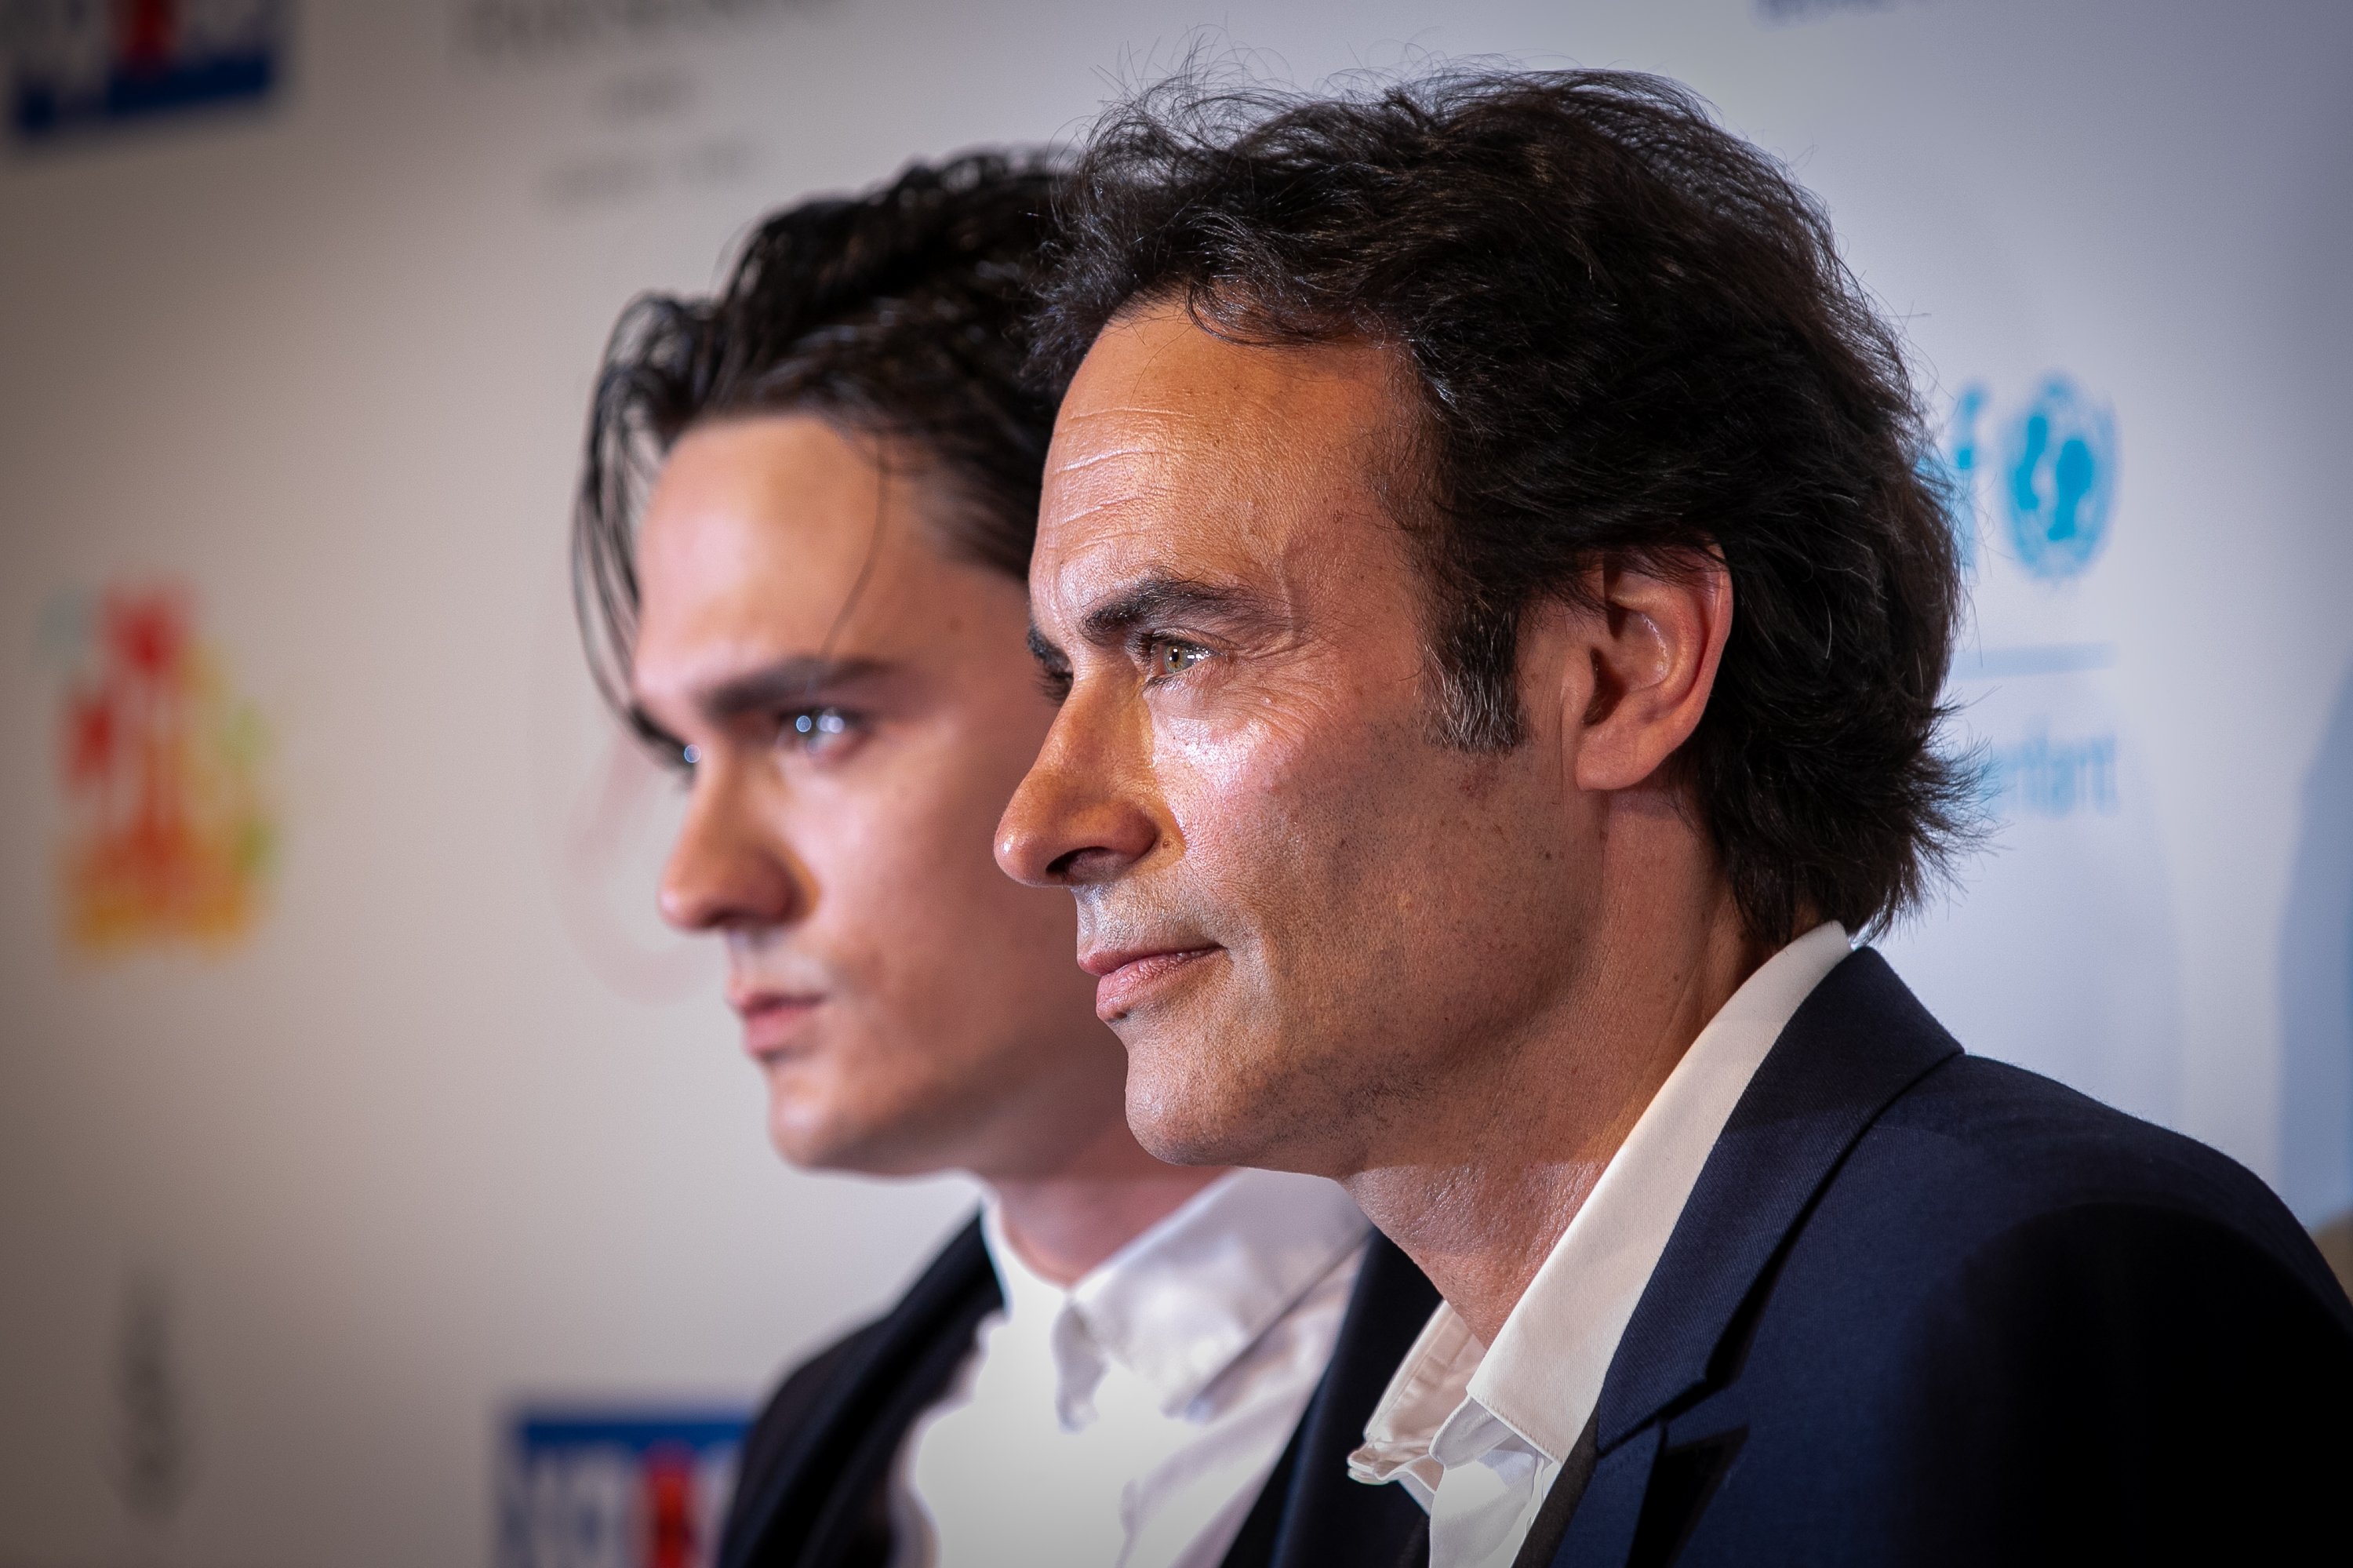 Alain-Fabien Delon et Anthony Delon le 03 juin 2019 à Paris, France | Photo : Getty images